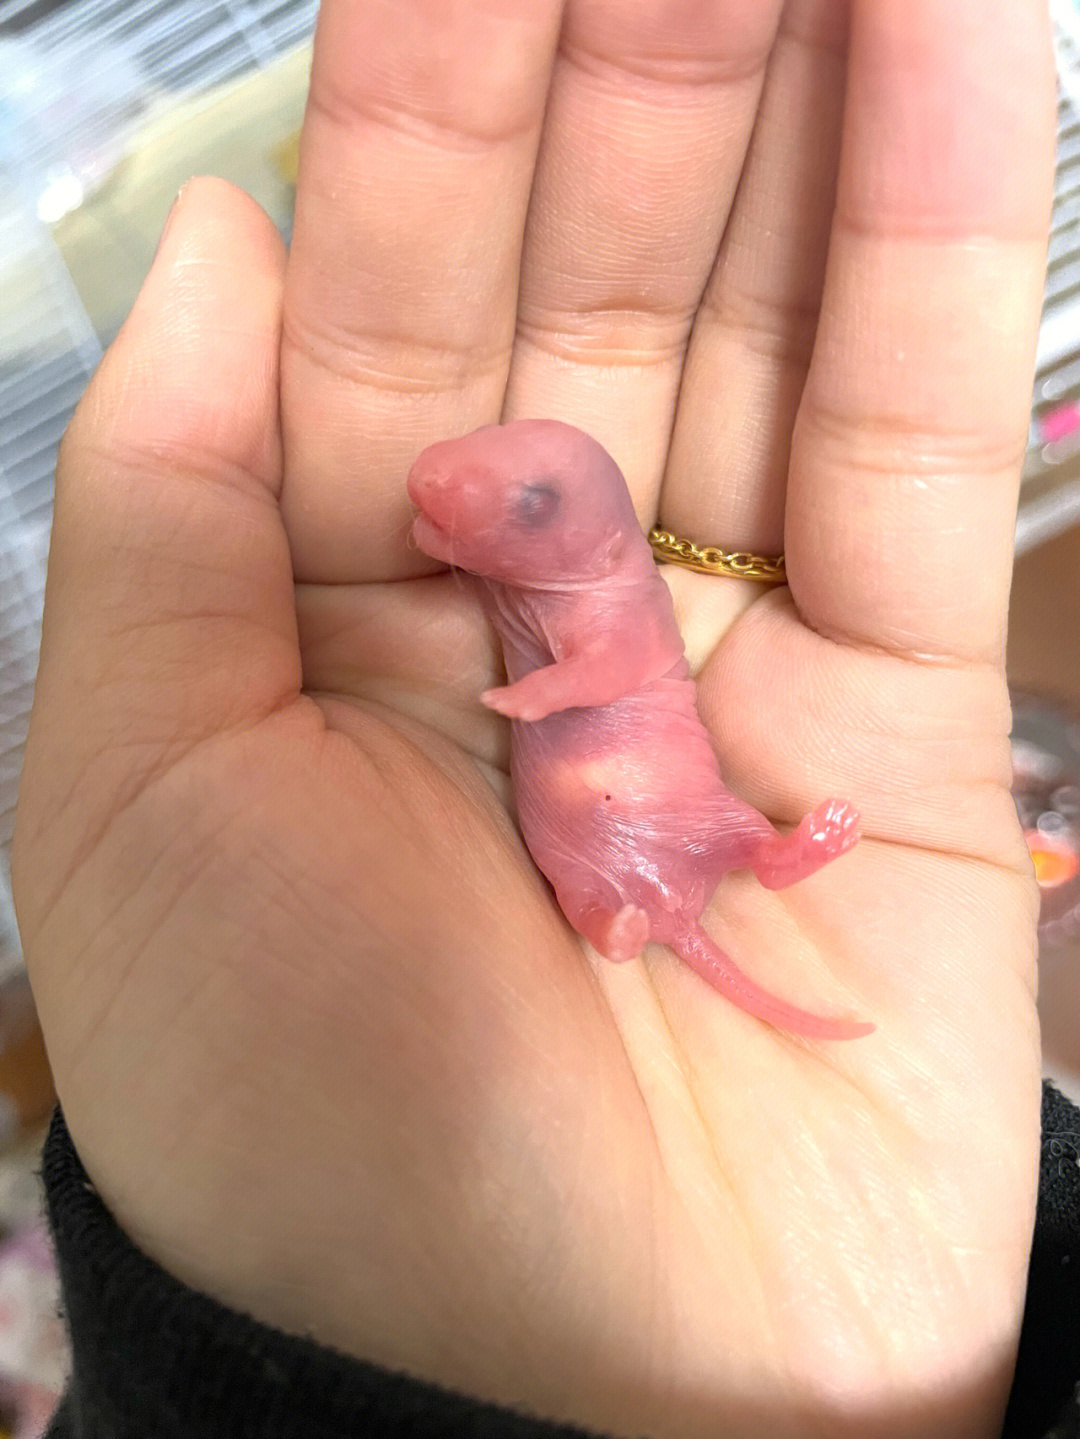 老鼠刚出生的样子图片